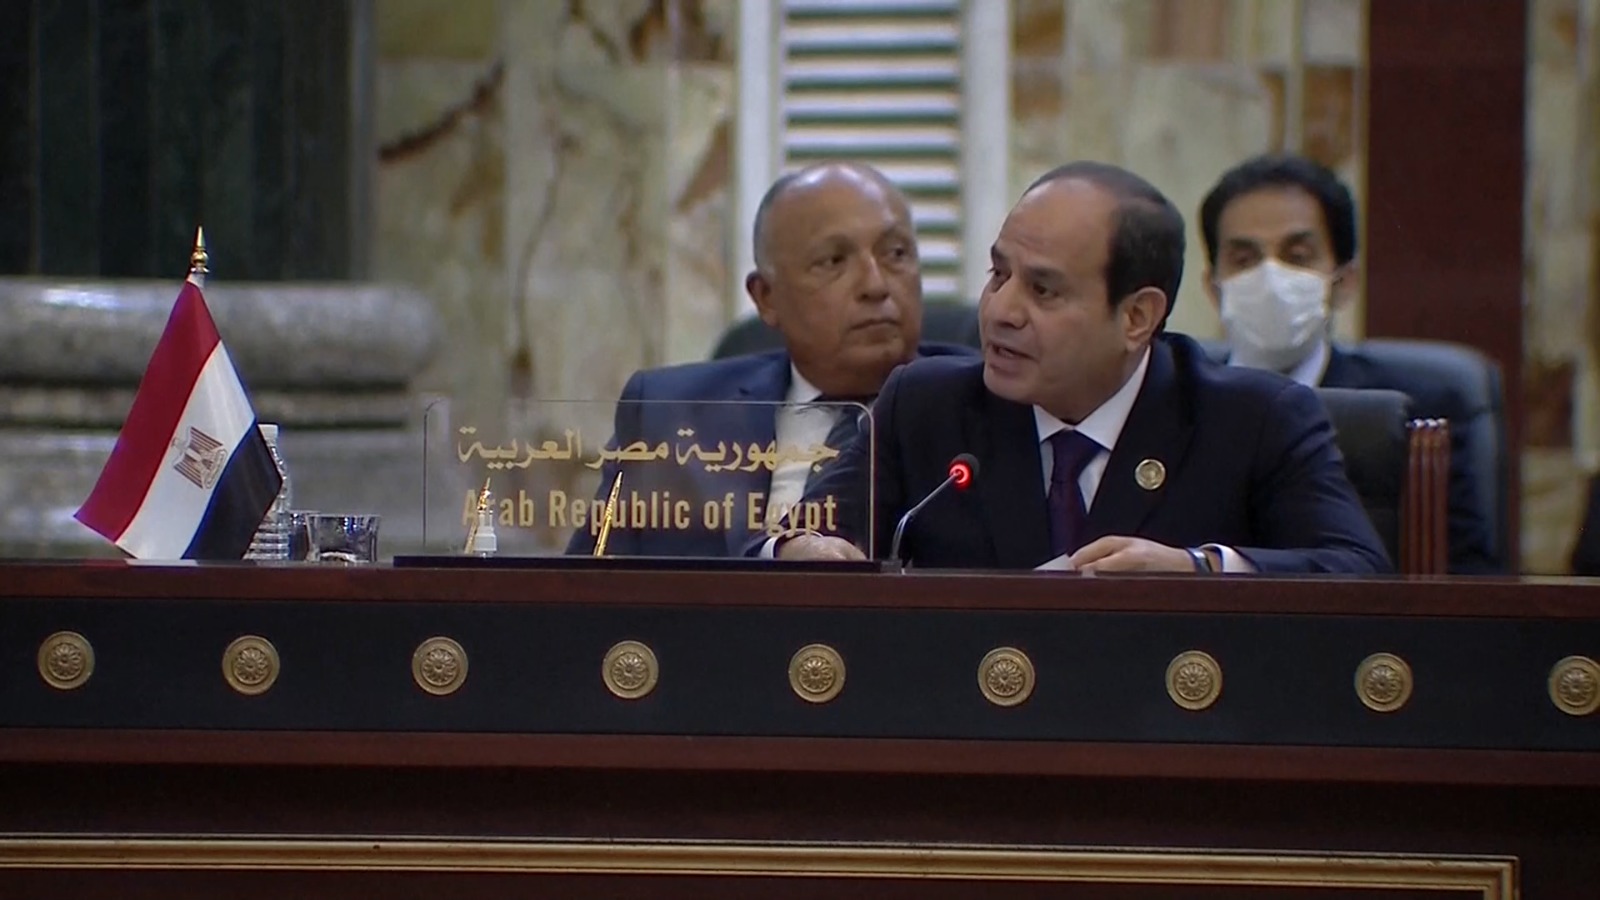 السيسي: مصر تقف سنداً للحكومة العراقية وندعو لمرحلة جديدة من التعاون الإقليمي